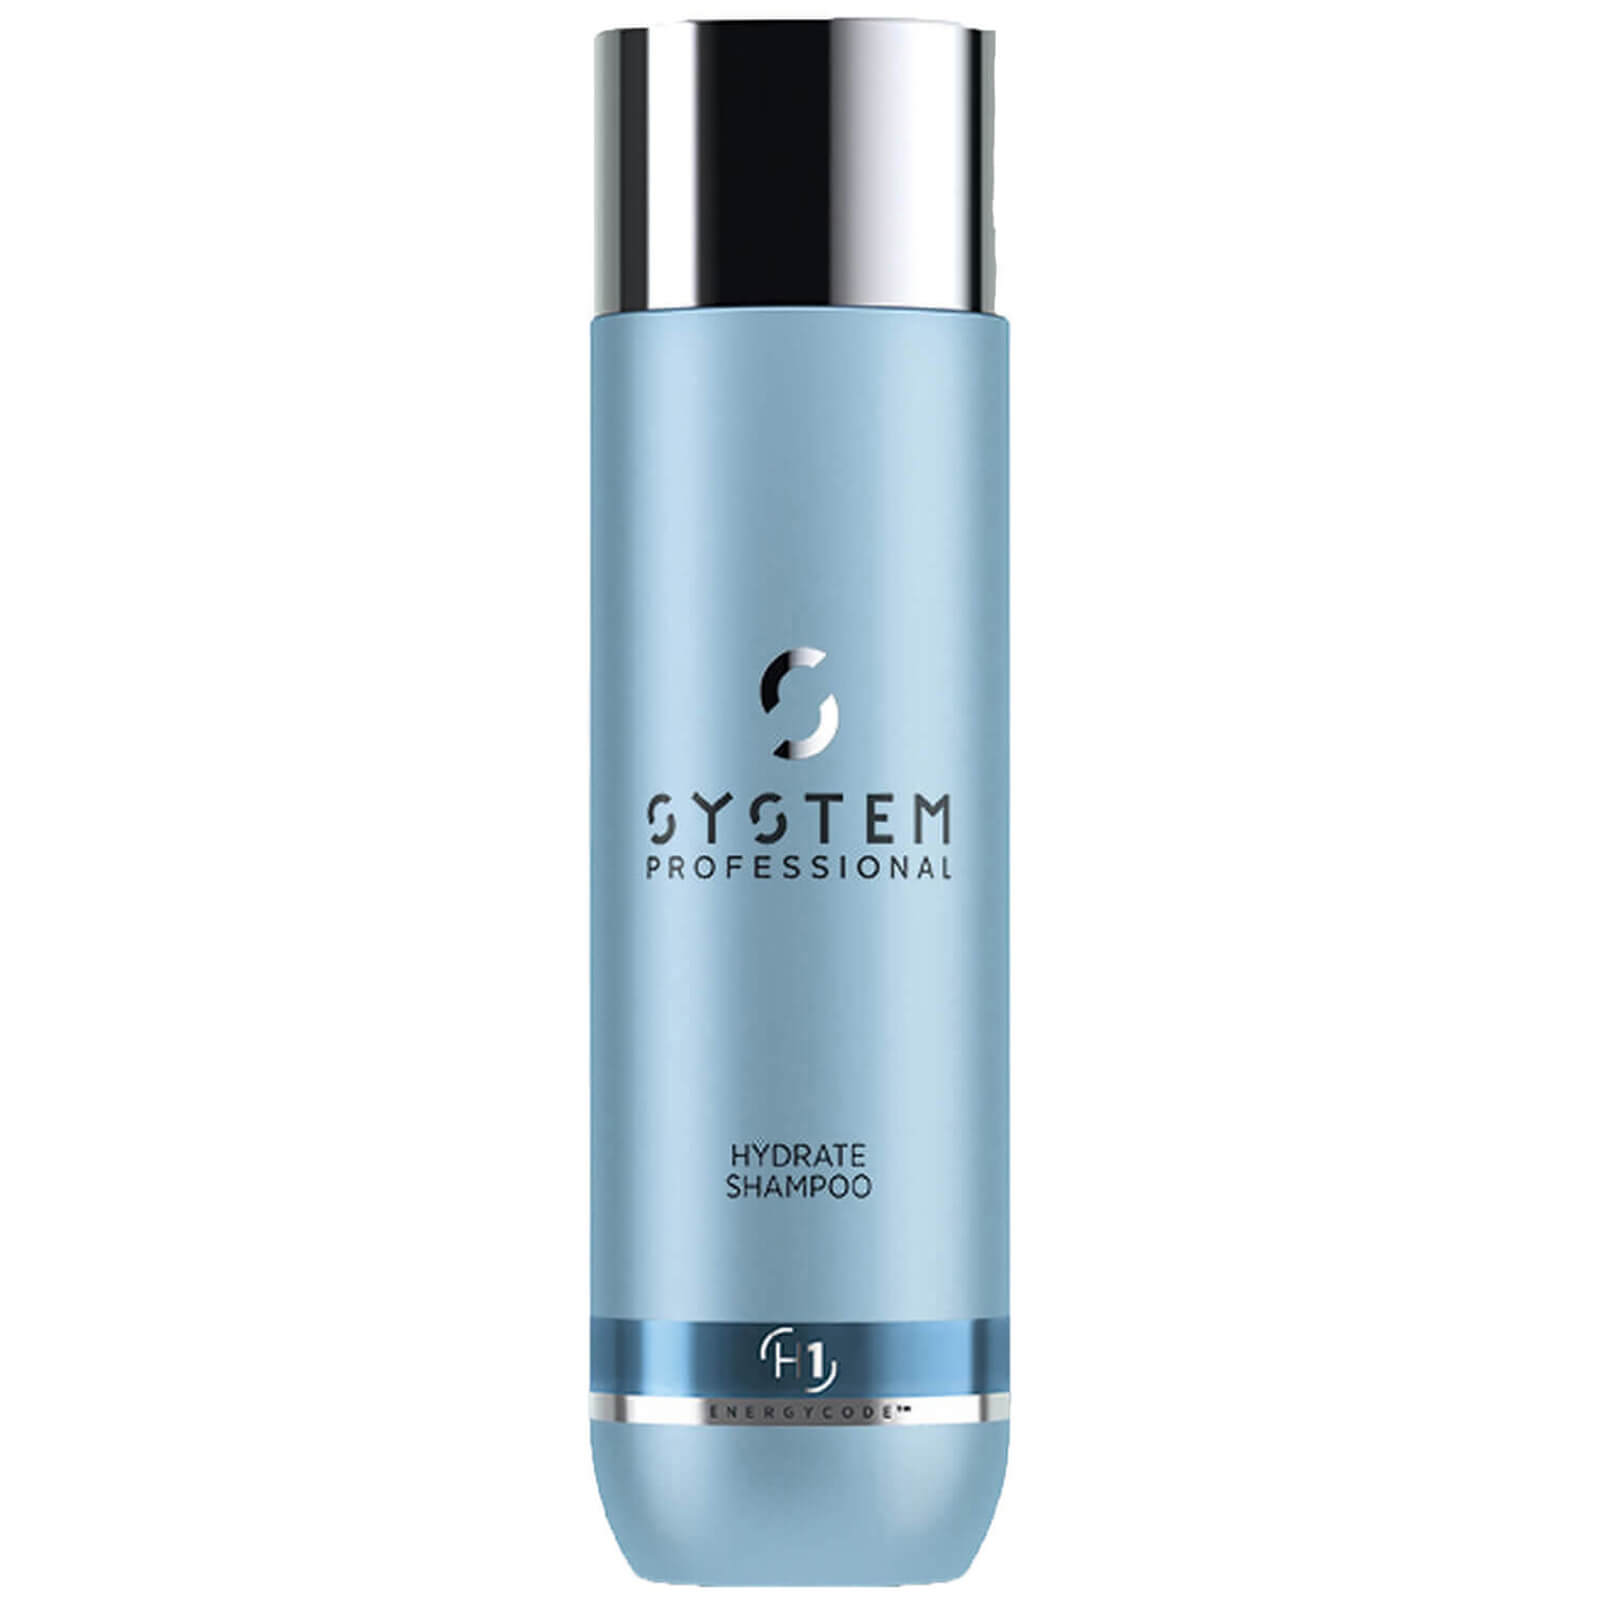 System Professional Lipidcode Hydrate H1 Shampoo 250 Ml